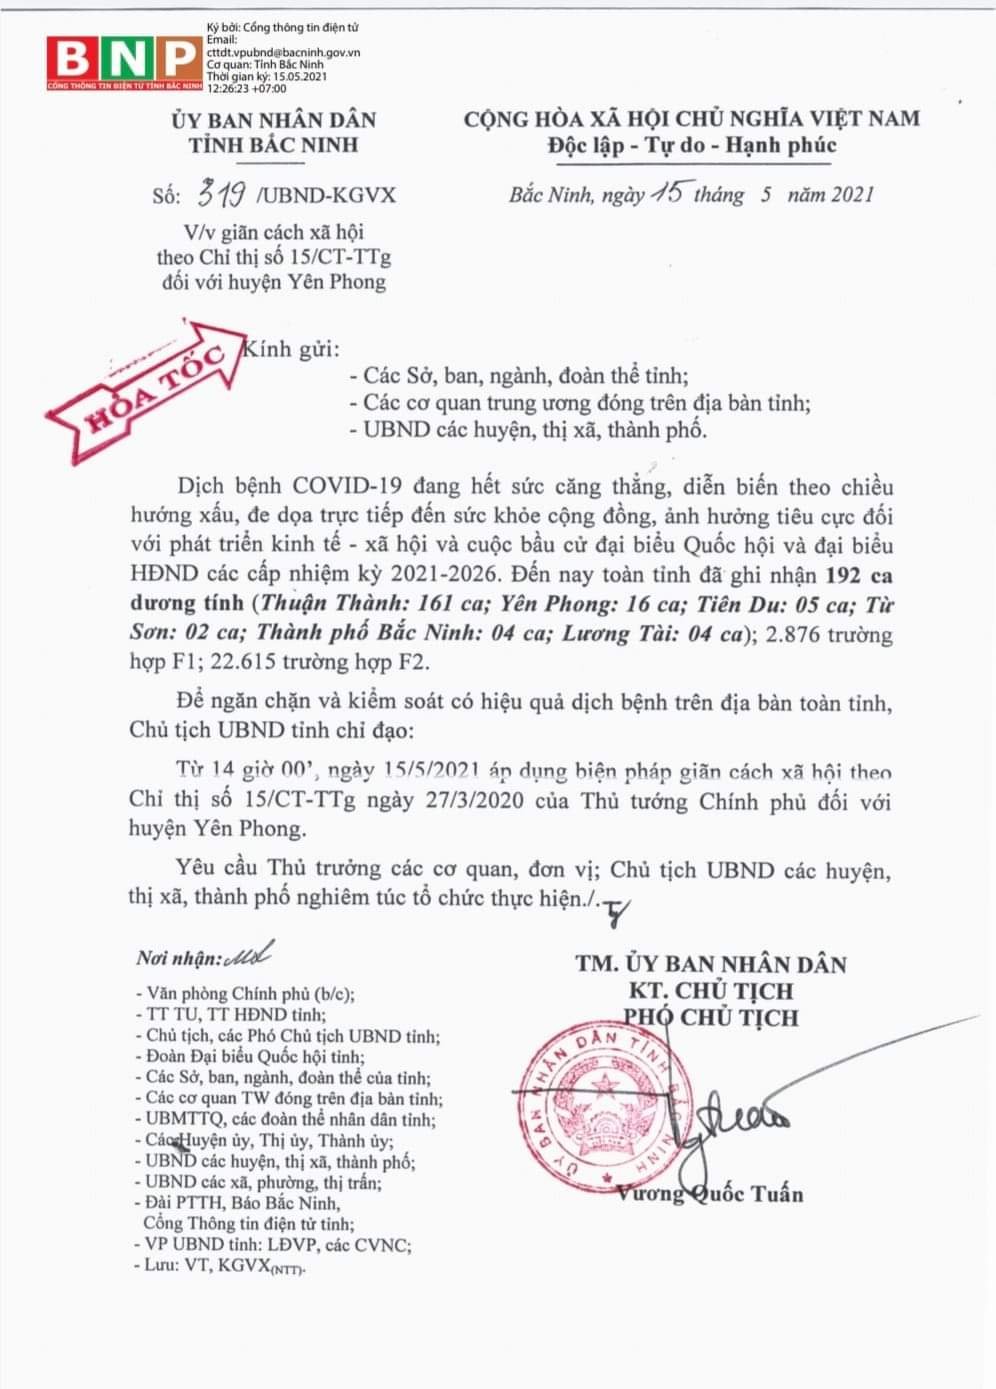 Bắc Ninh chính thức giãn cách xã hội huyện Yên Phong từ 14h hôm nay (15/5)